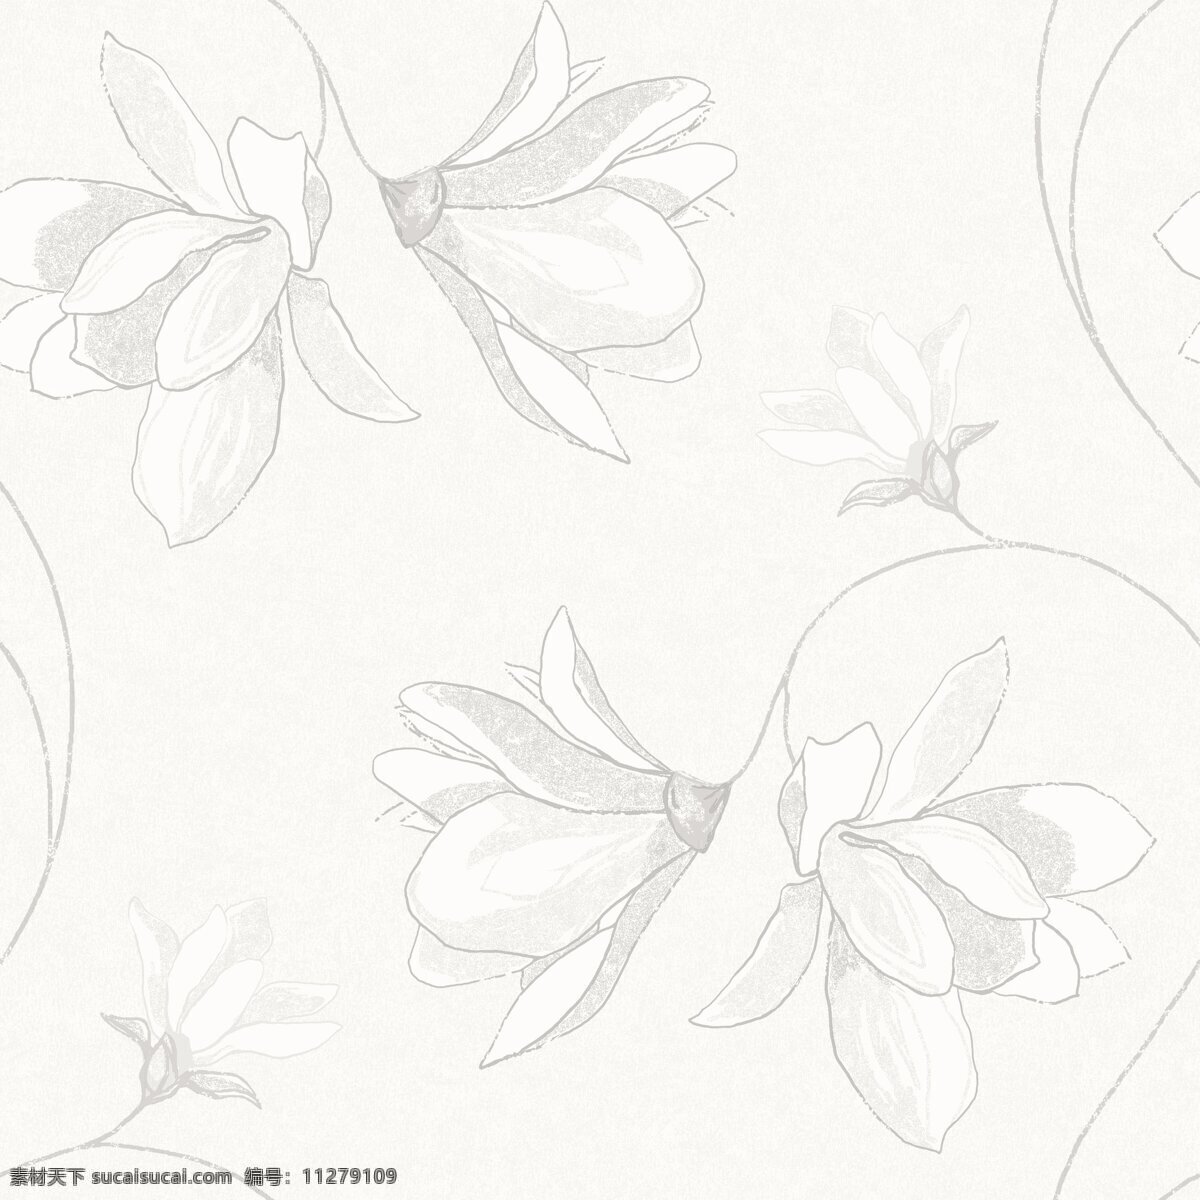 清新 素雅 铅笔画 花朵 壁纸 图案 壁纸图案 花蕊 浅色底纹 浅色花朵 植物元素